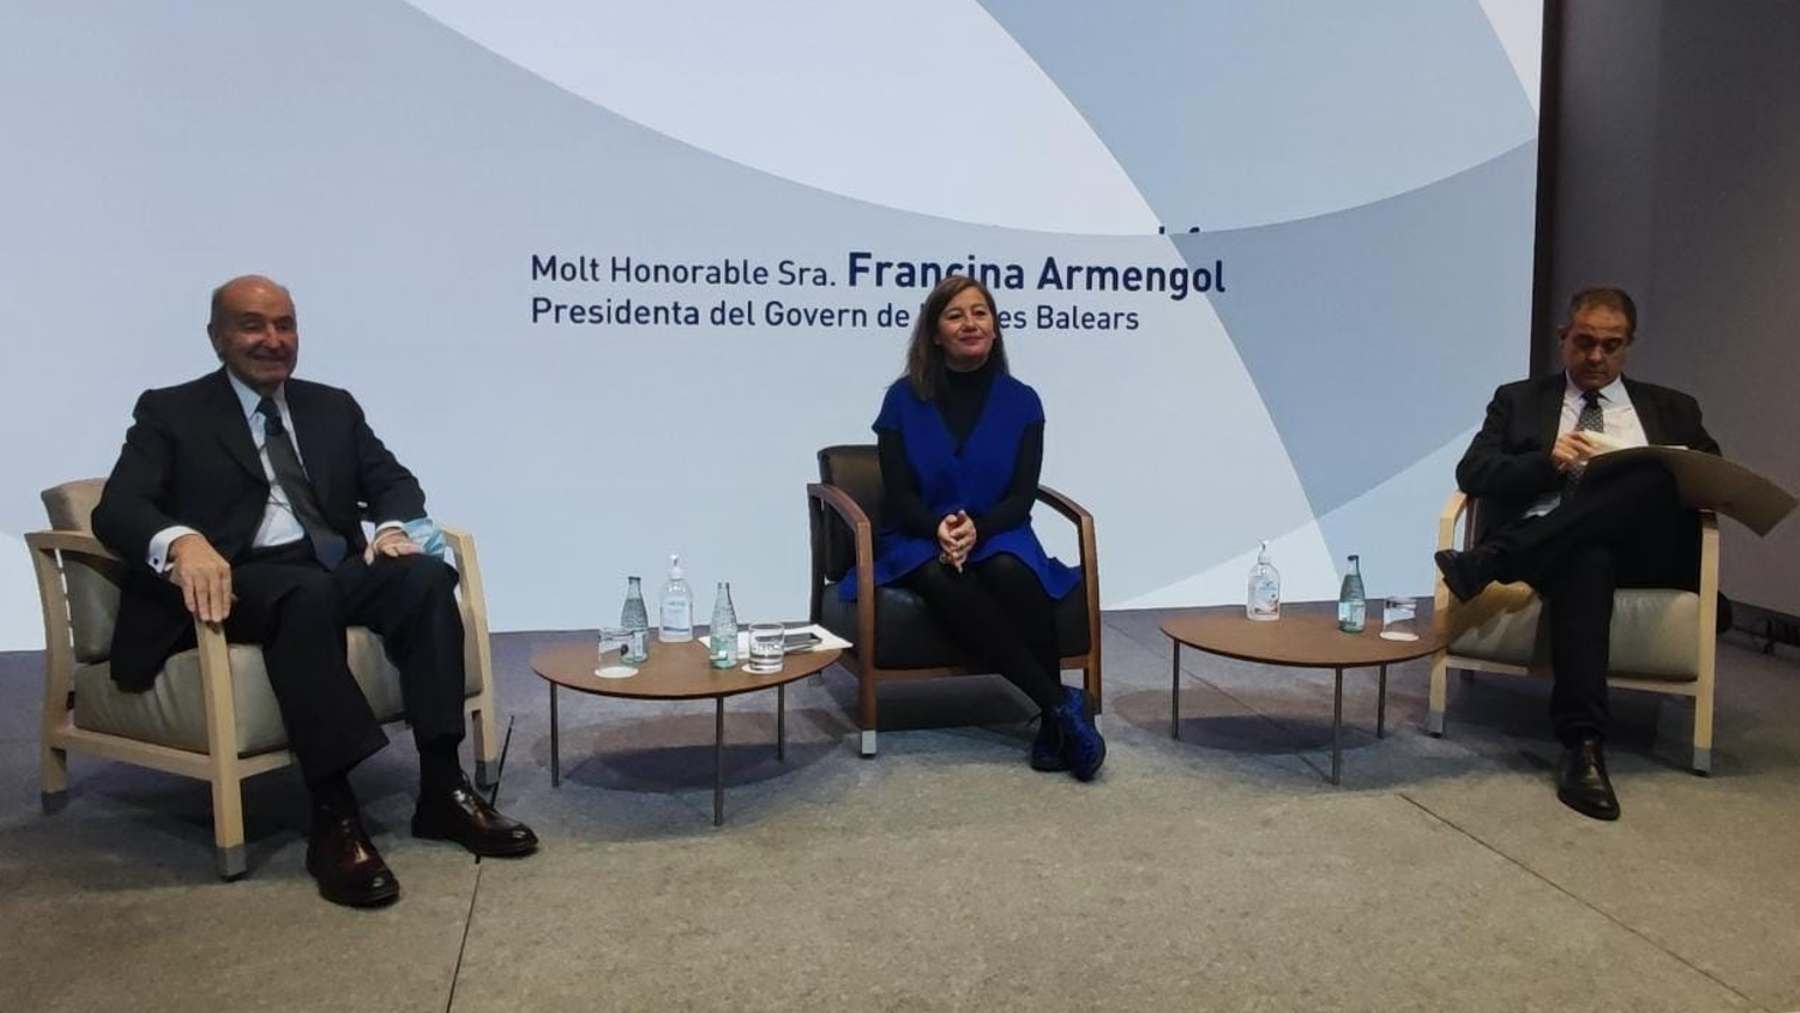 La presidenta del Govern balear, Francina Armengol, junto con el ponente de la Constitución Miquel Roca y el periodista Enric Sierra. EUROPA PRESS